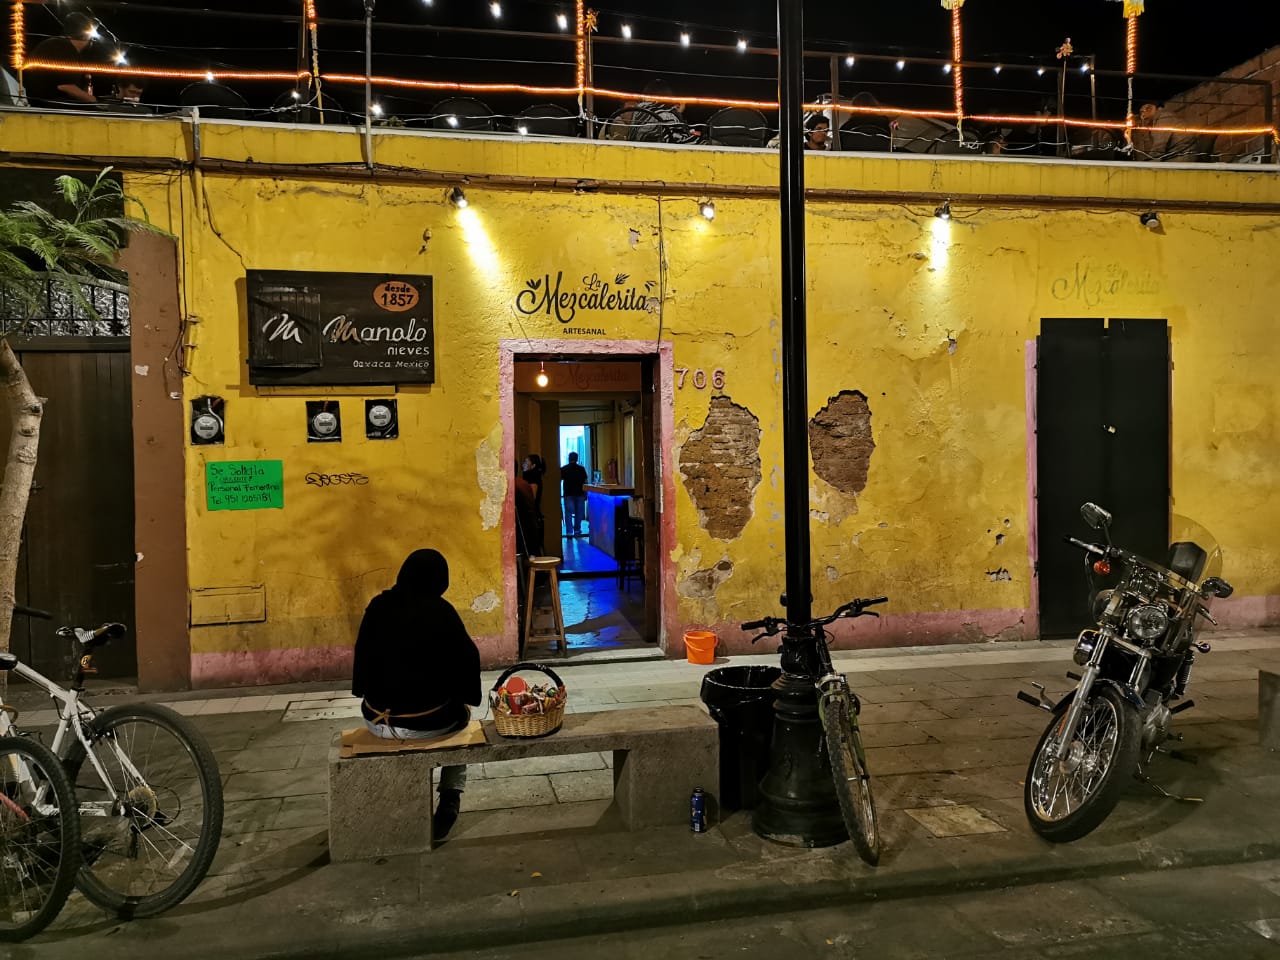 En este momento estás viendo La Mezcalerita, lugar de Oaxaca donde rinden homenaje al mezcal de forma ancestral